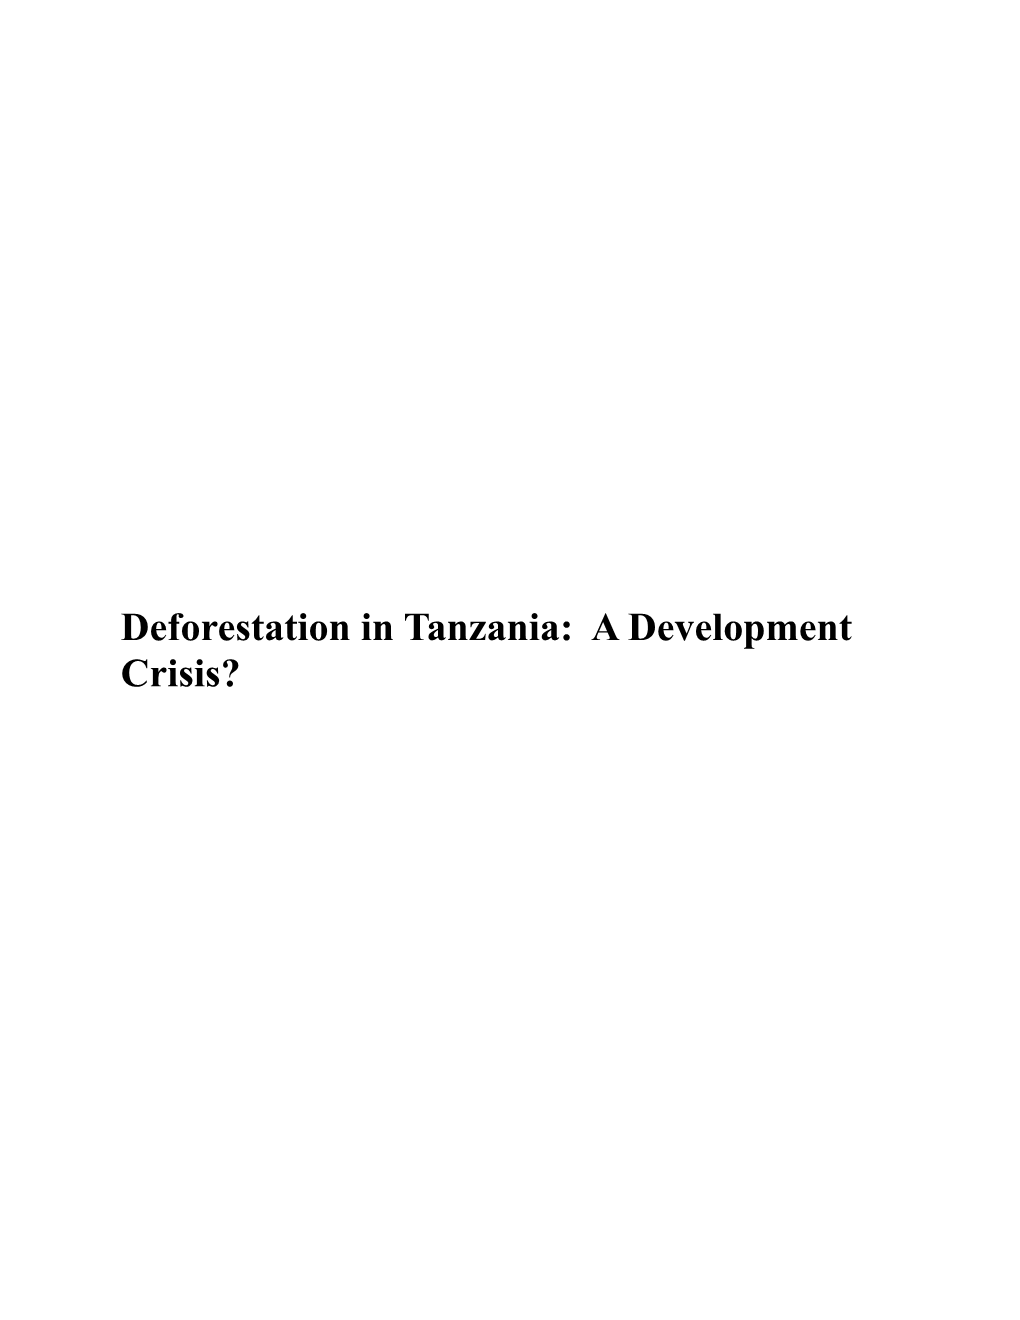 Deforestation in Tanzania: a Development Crisis?